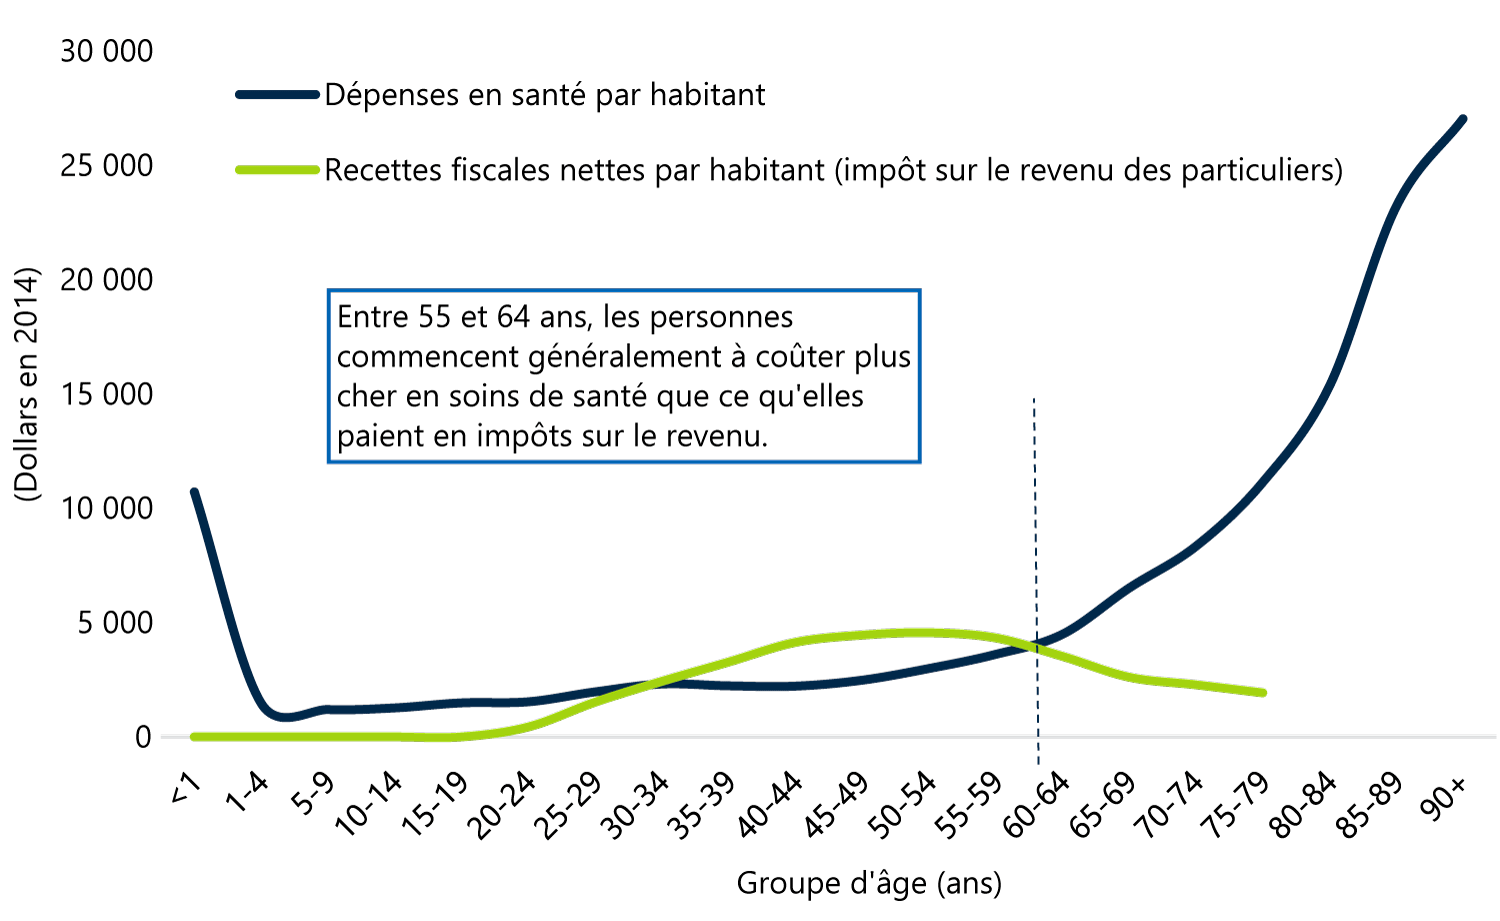 Après l’âge de 60 ans, les dépenses en santé par habitant augmentent alors que l’impôt provincial sur le revenu des particuliers diminue